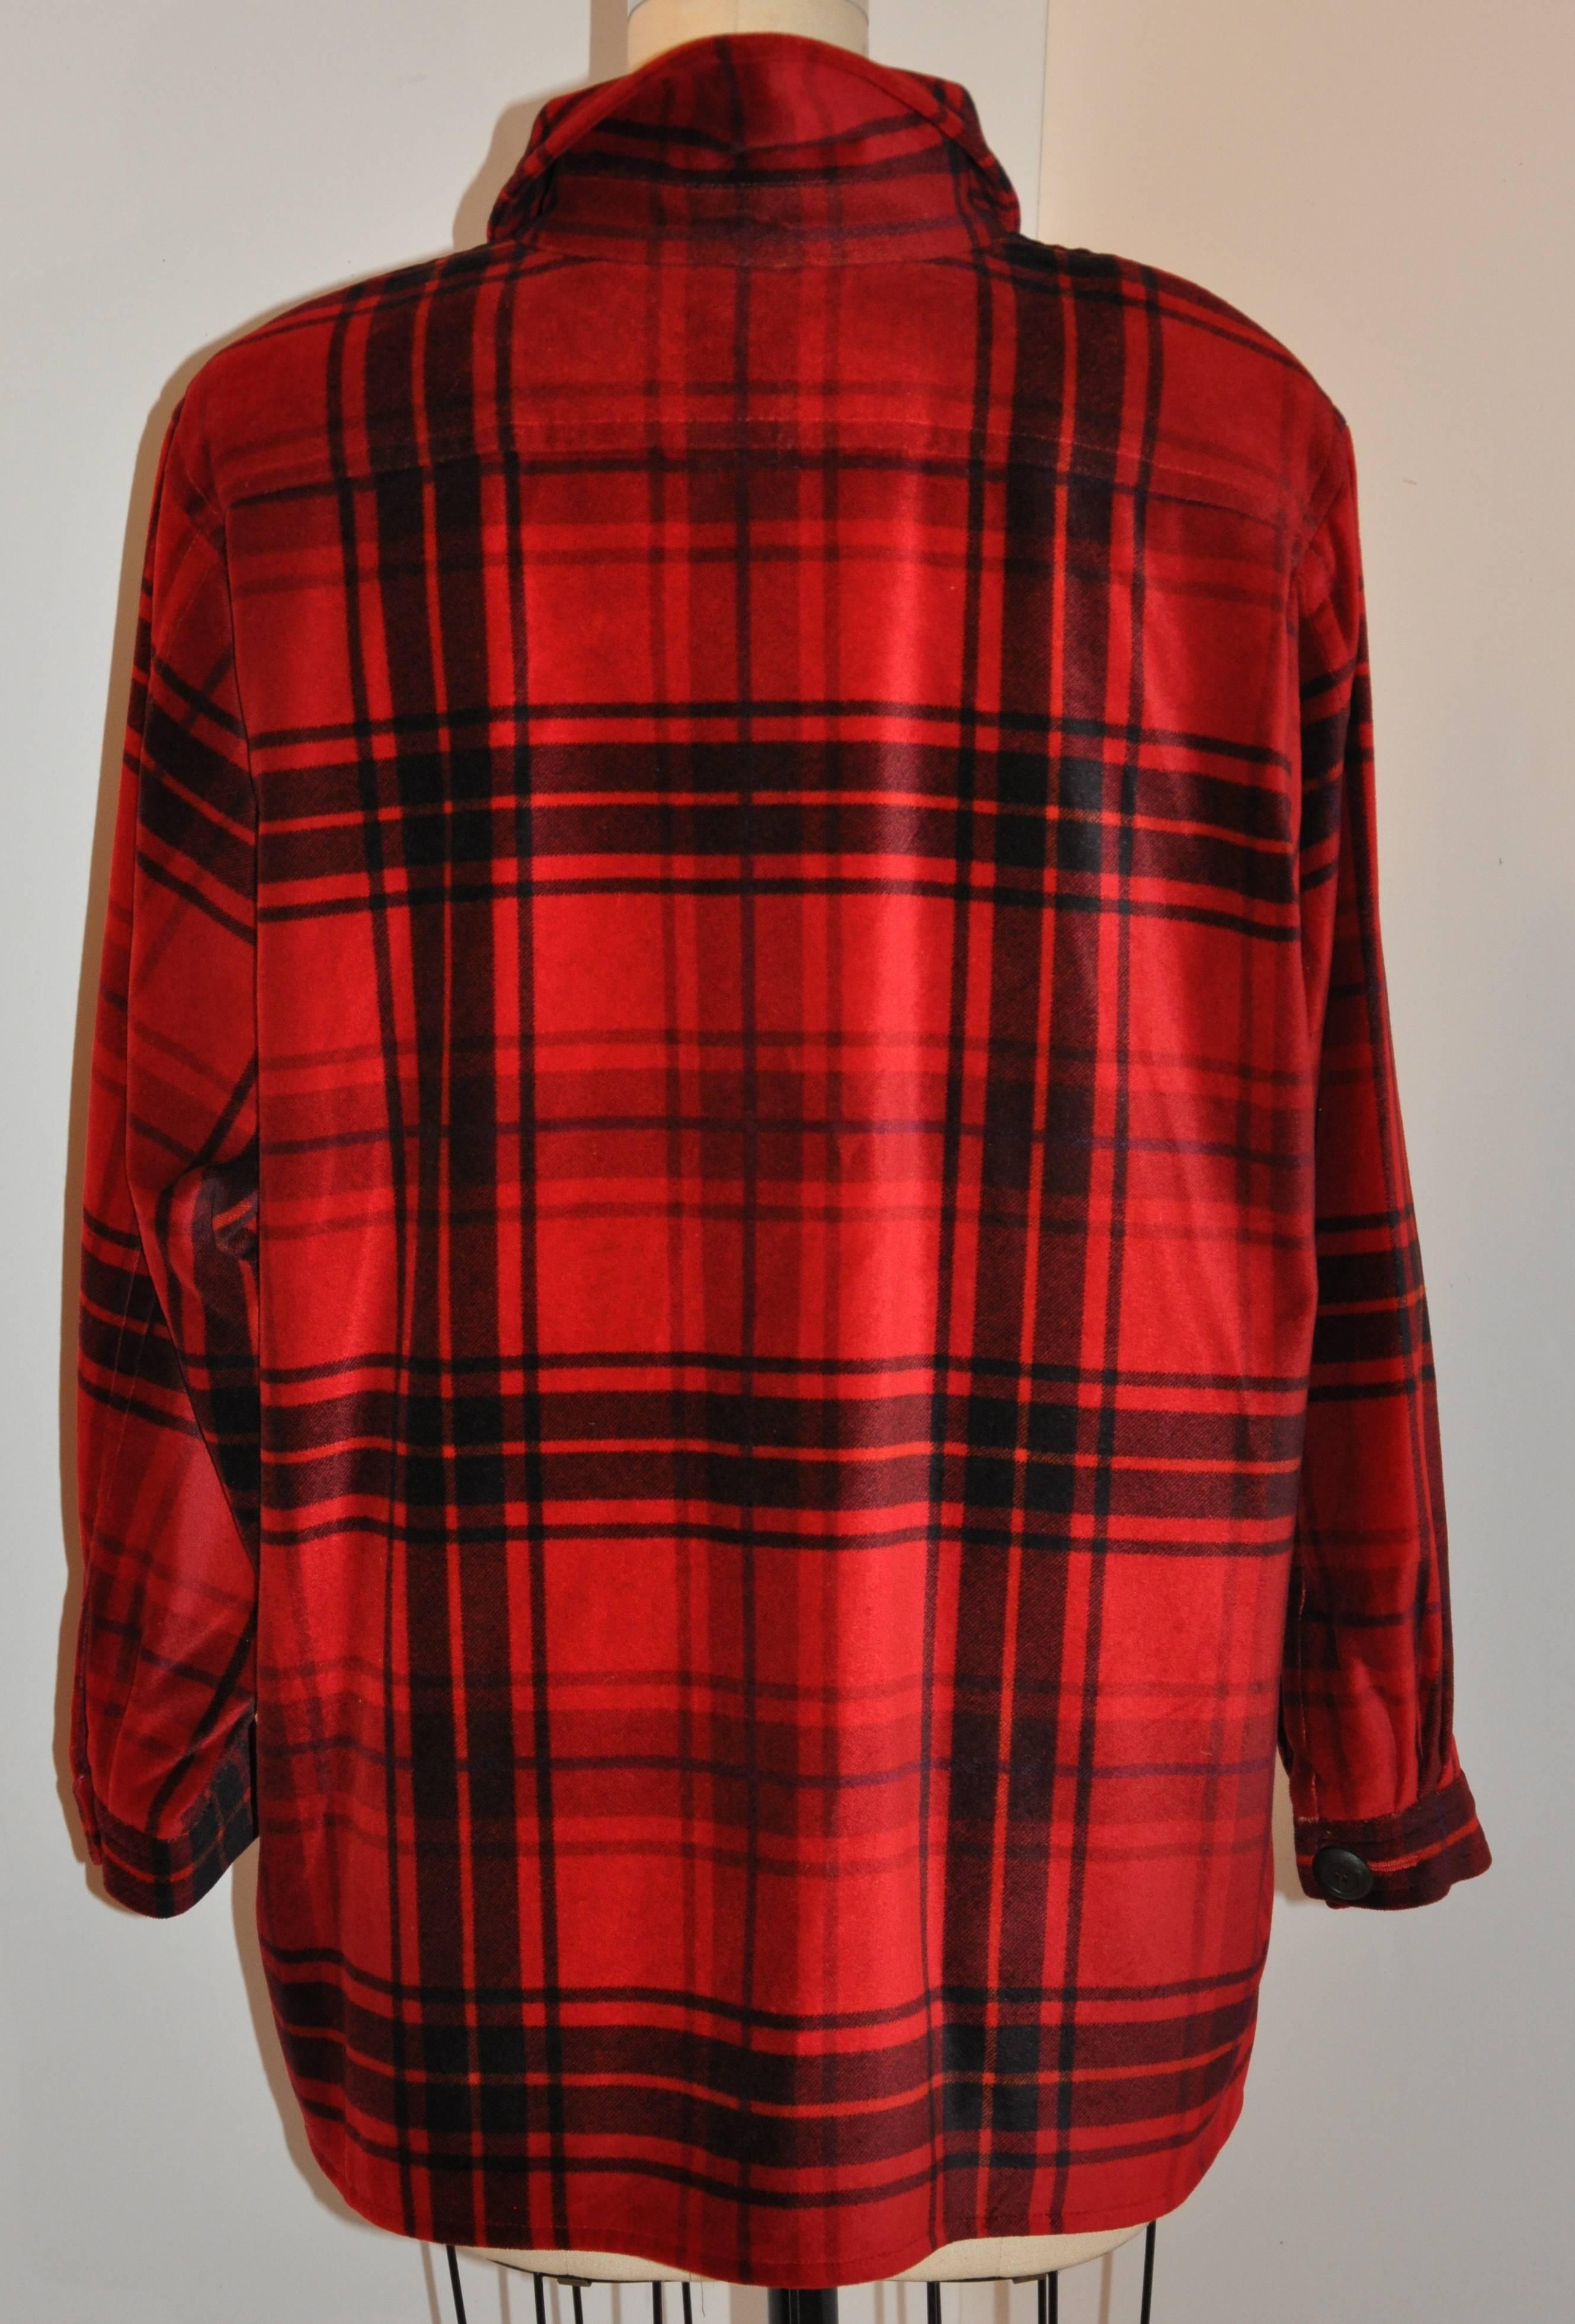 Women's or Men's Yves Saint Laurent Deep Red & Black Cotton Velvet Smock Button Jacket For Sale